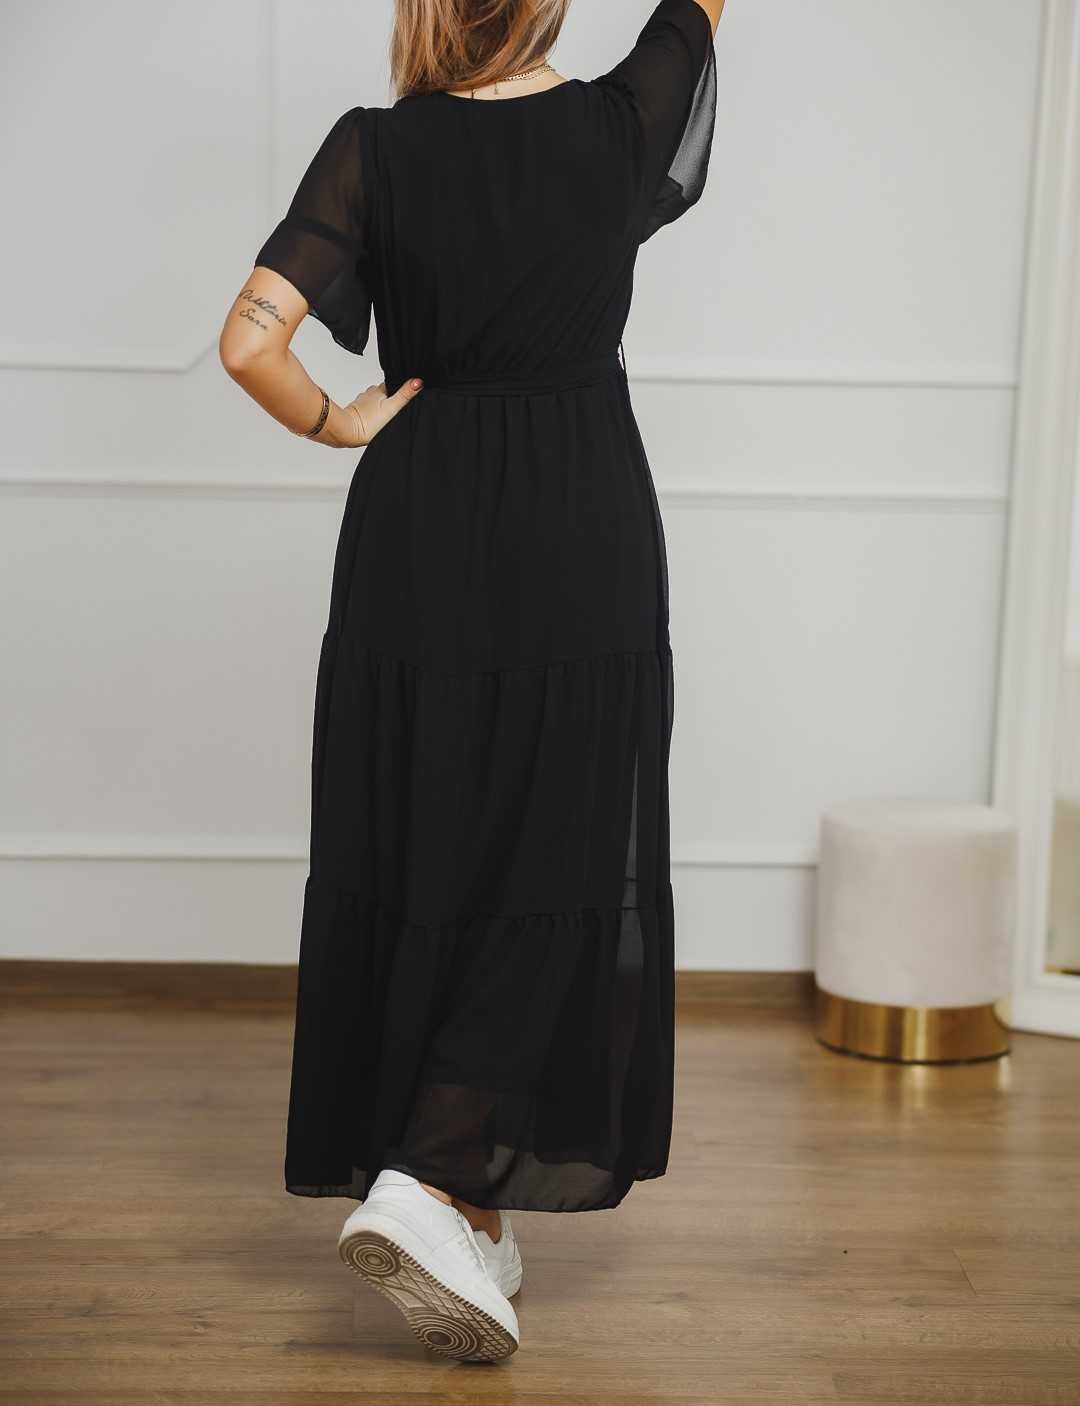 Sukienka długa, czarna z żorżety DX12559 rozmiar S/M